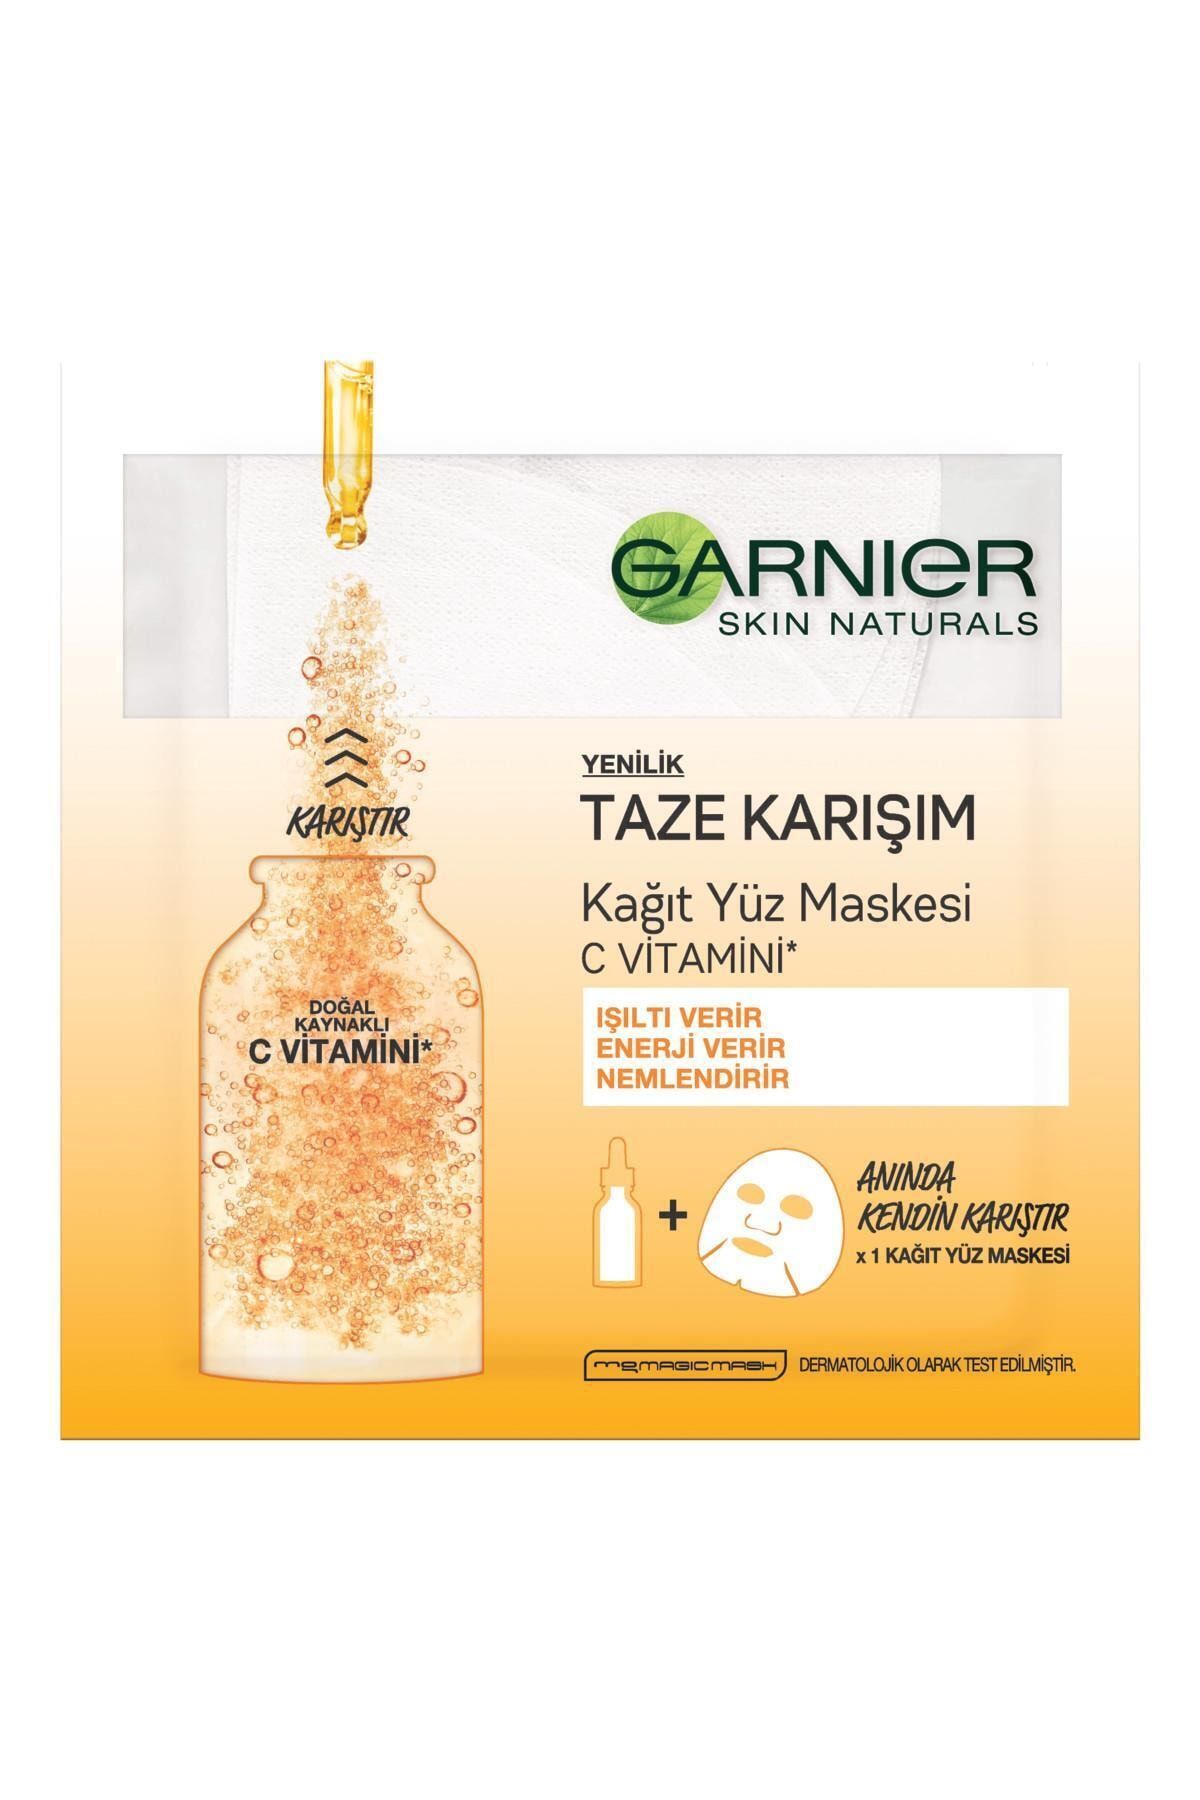 Garnier Marka: Taze Karışım C Vitamini Kağıt Yüz Maskesi Kategori: Yüz Maskesi